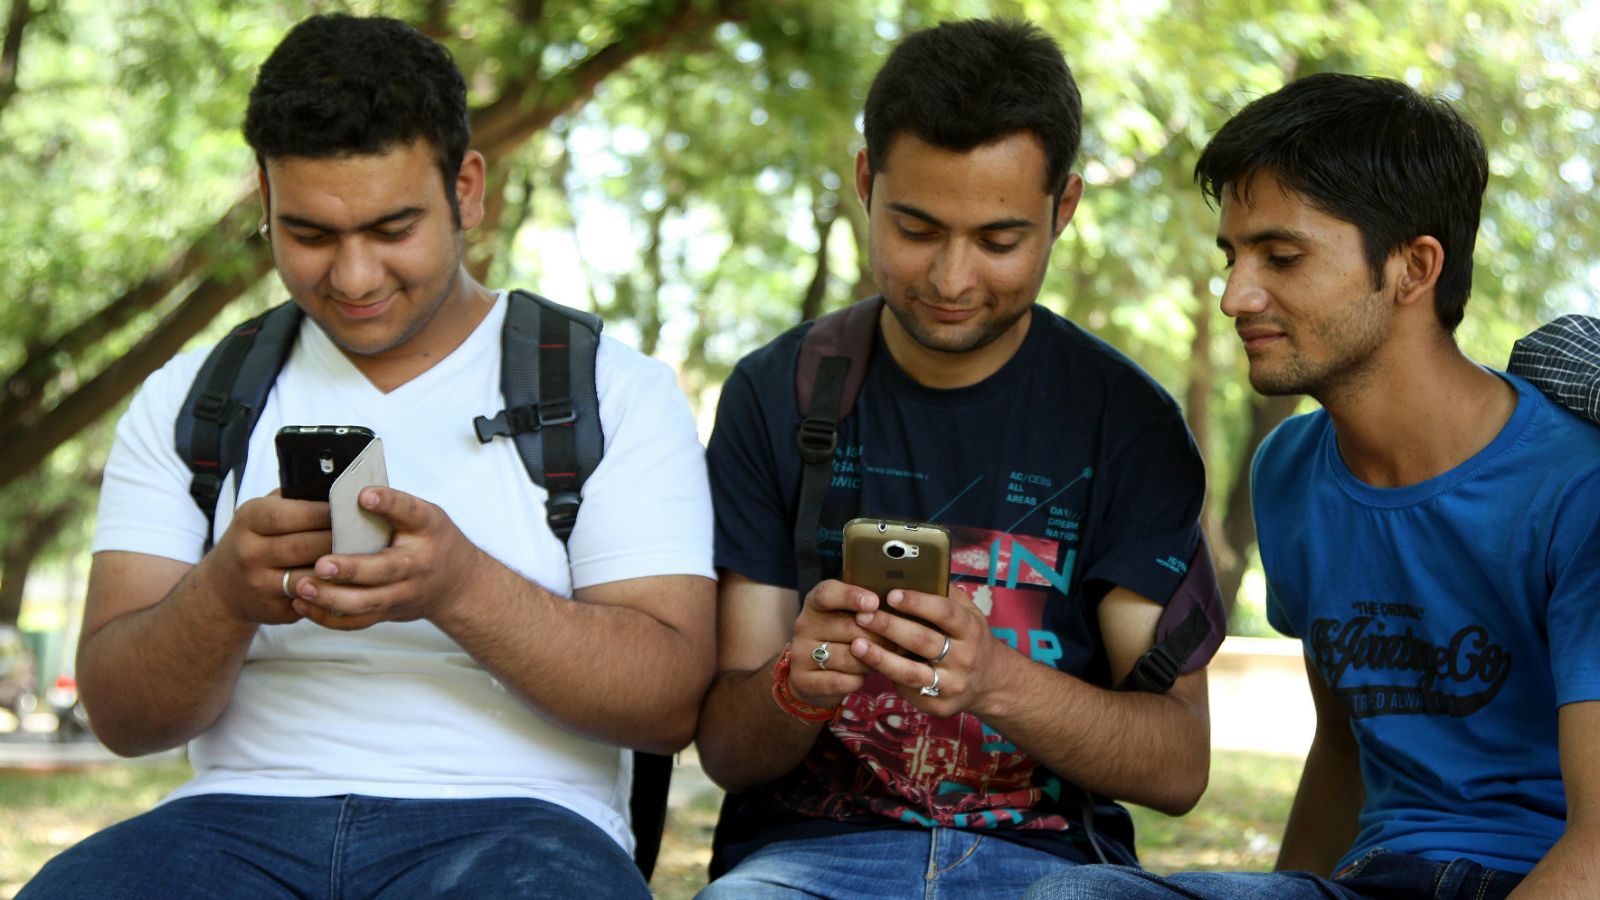 Узбекистан поднялся на четыре строчки по скорости мобильного интернета, соперничая с Алжиром и Танзанией